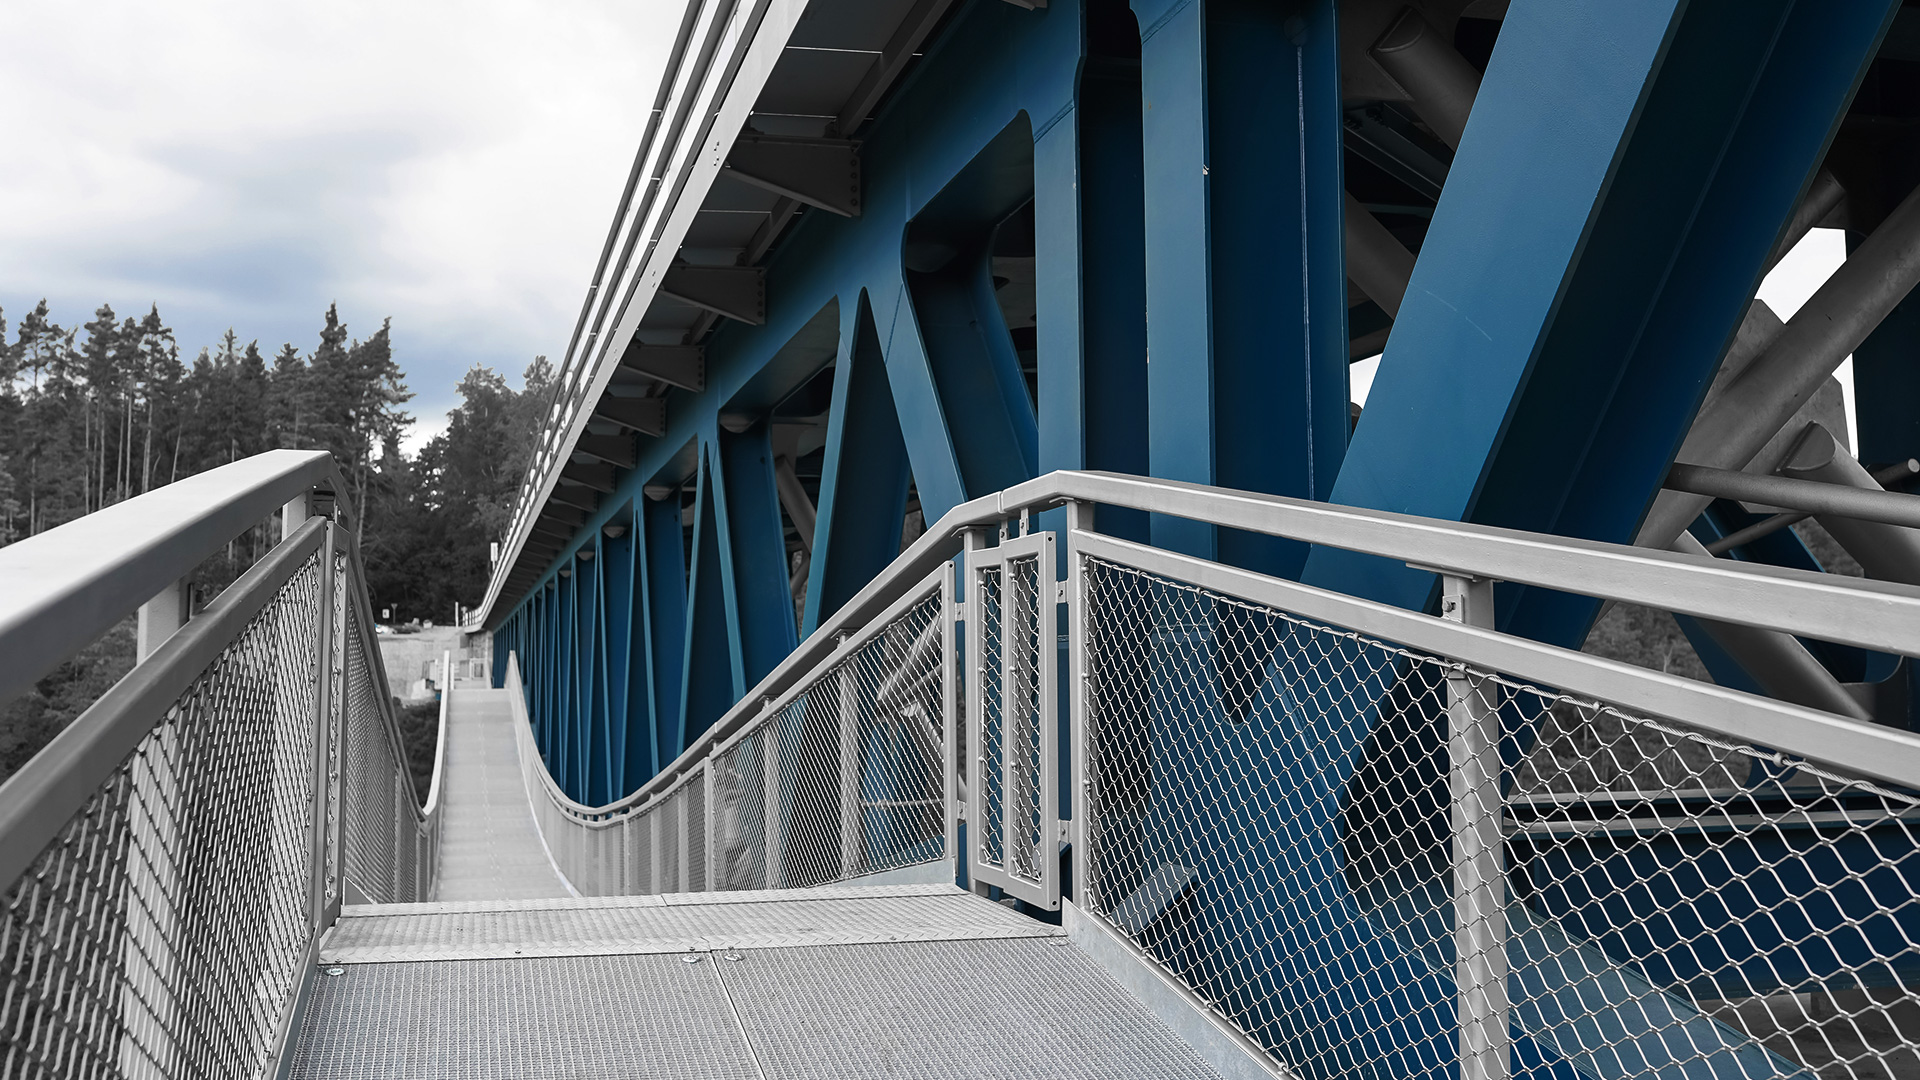 Rekonstrukce železničního mostu Pňovany – Bezdružice